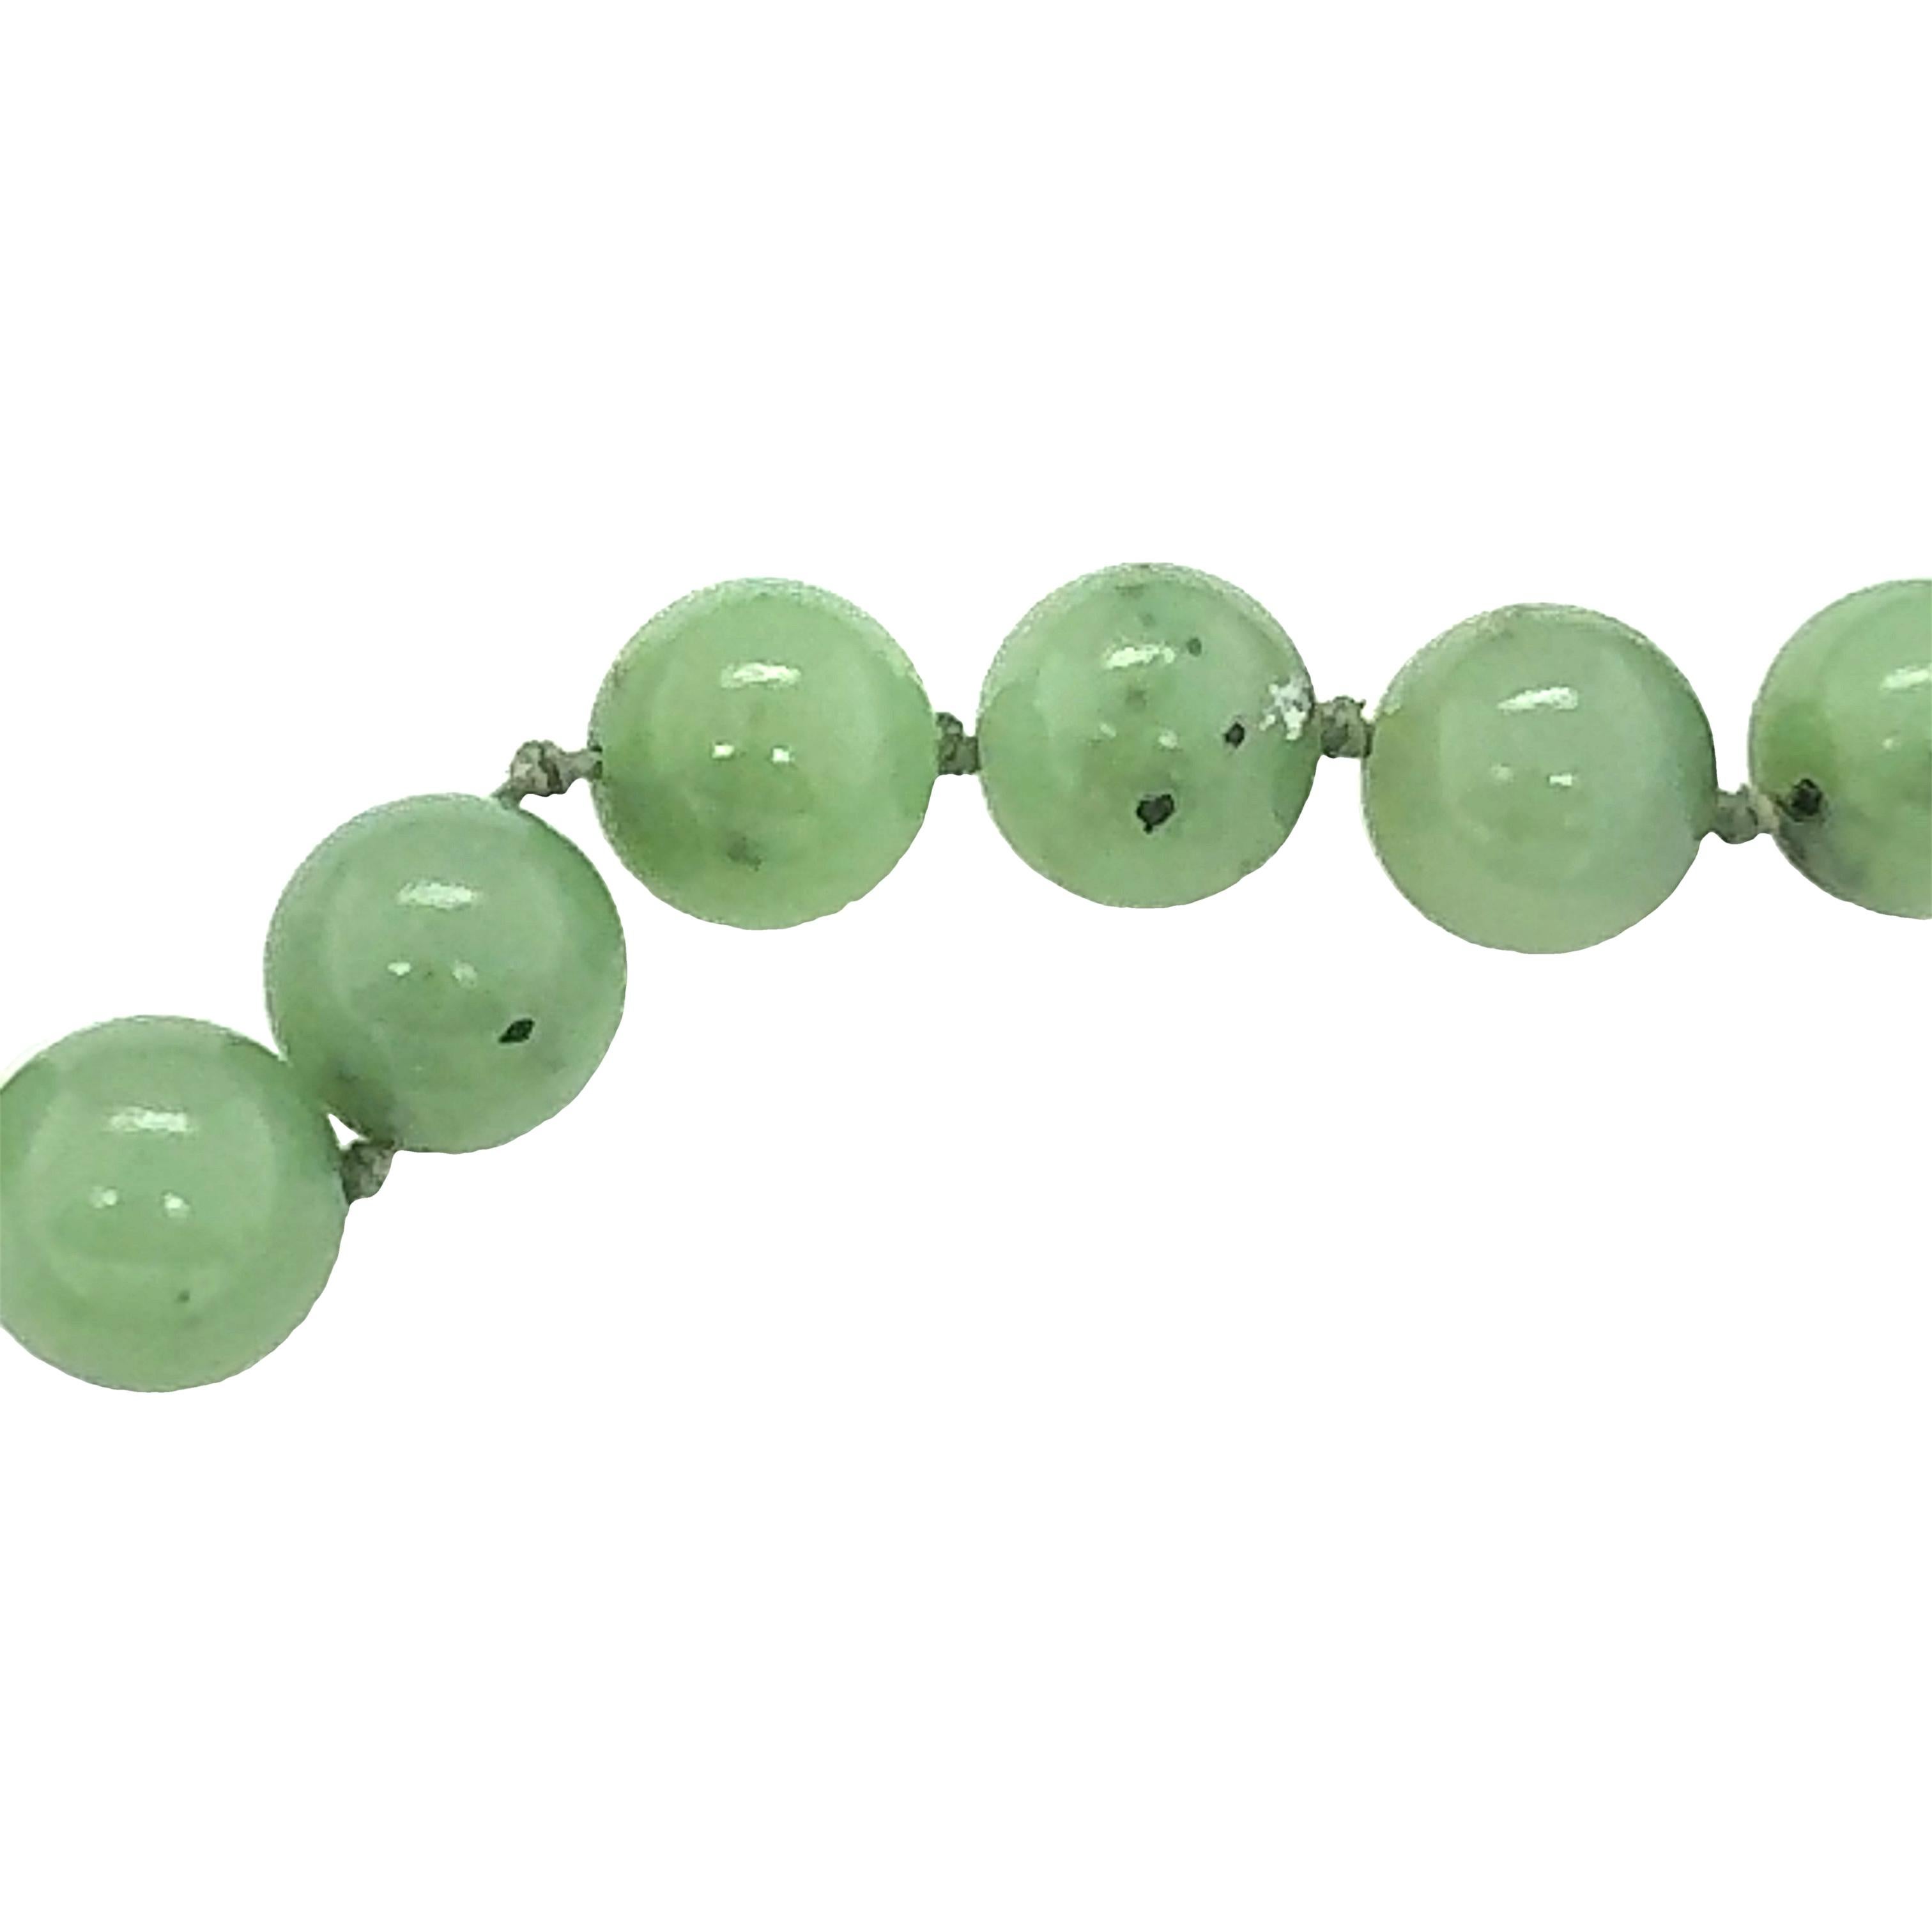 Un collier de perles de jade vert avec 38 perles mesurant 10 millimètres de diamètre en moyenne. Avec fermoir en or jaune 14K.

Métal : Or jaune 14K
Pierre précieuse : Jade vert
Circa : 1970
Poinçon/marque de fabrique : 14K
Taille/Mesures : 20